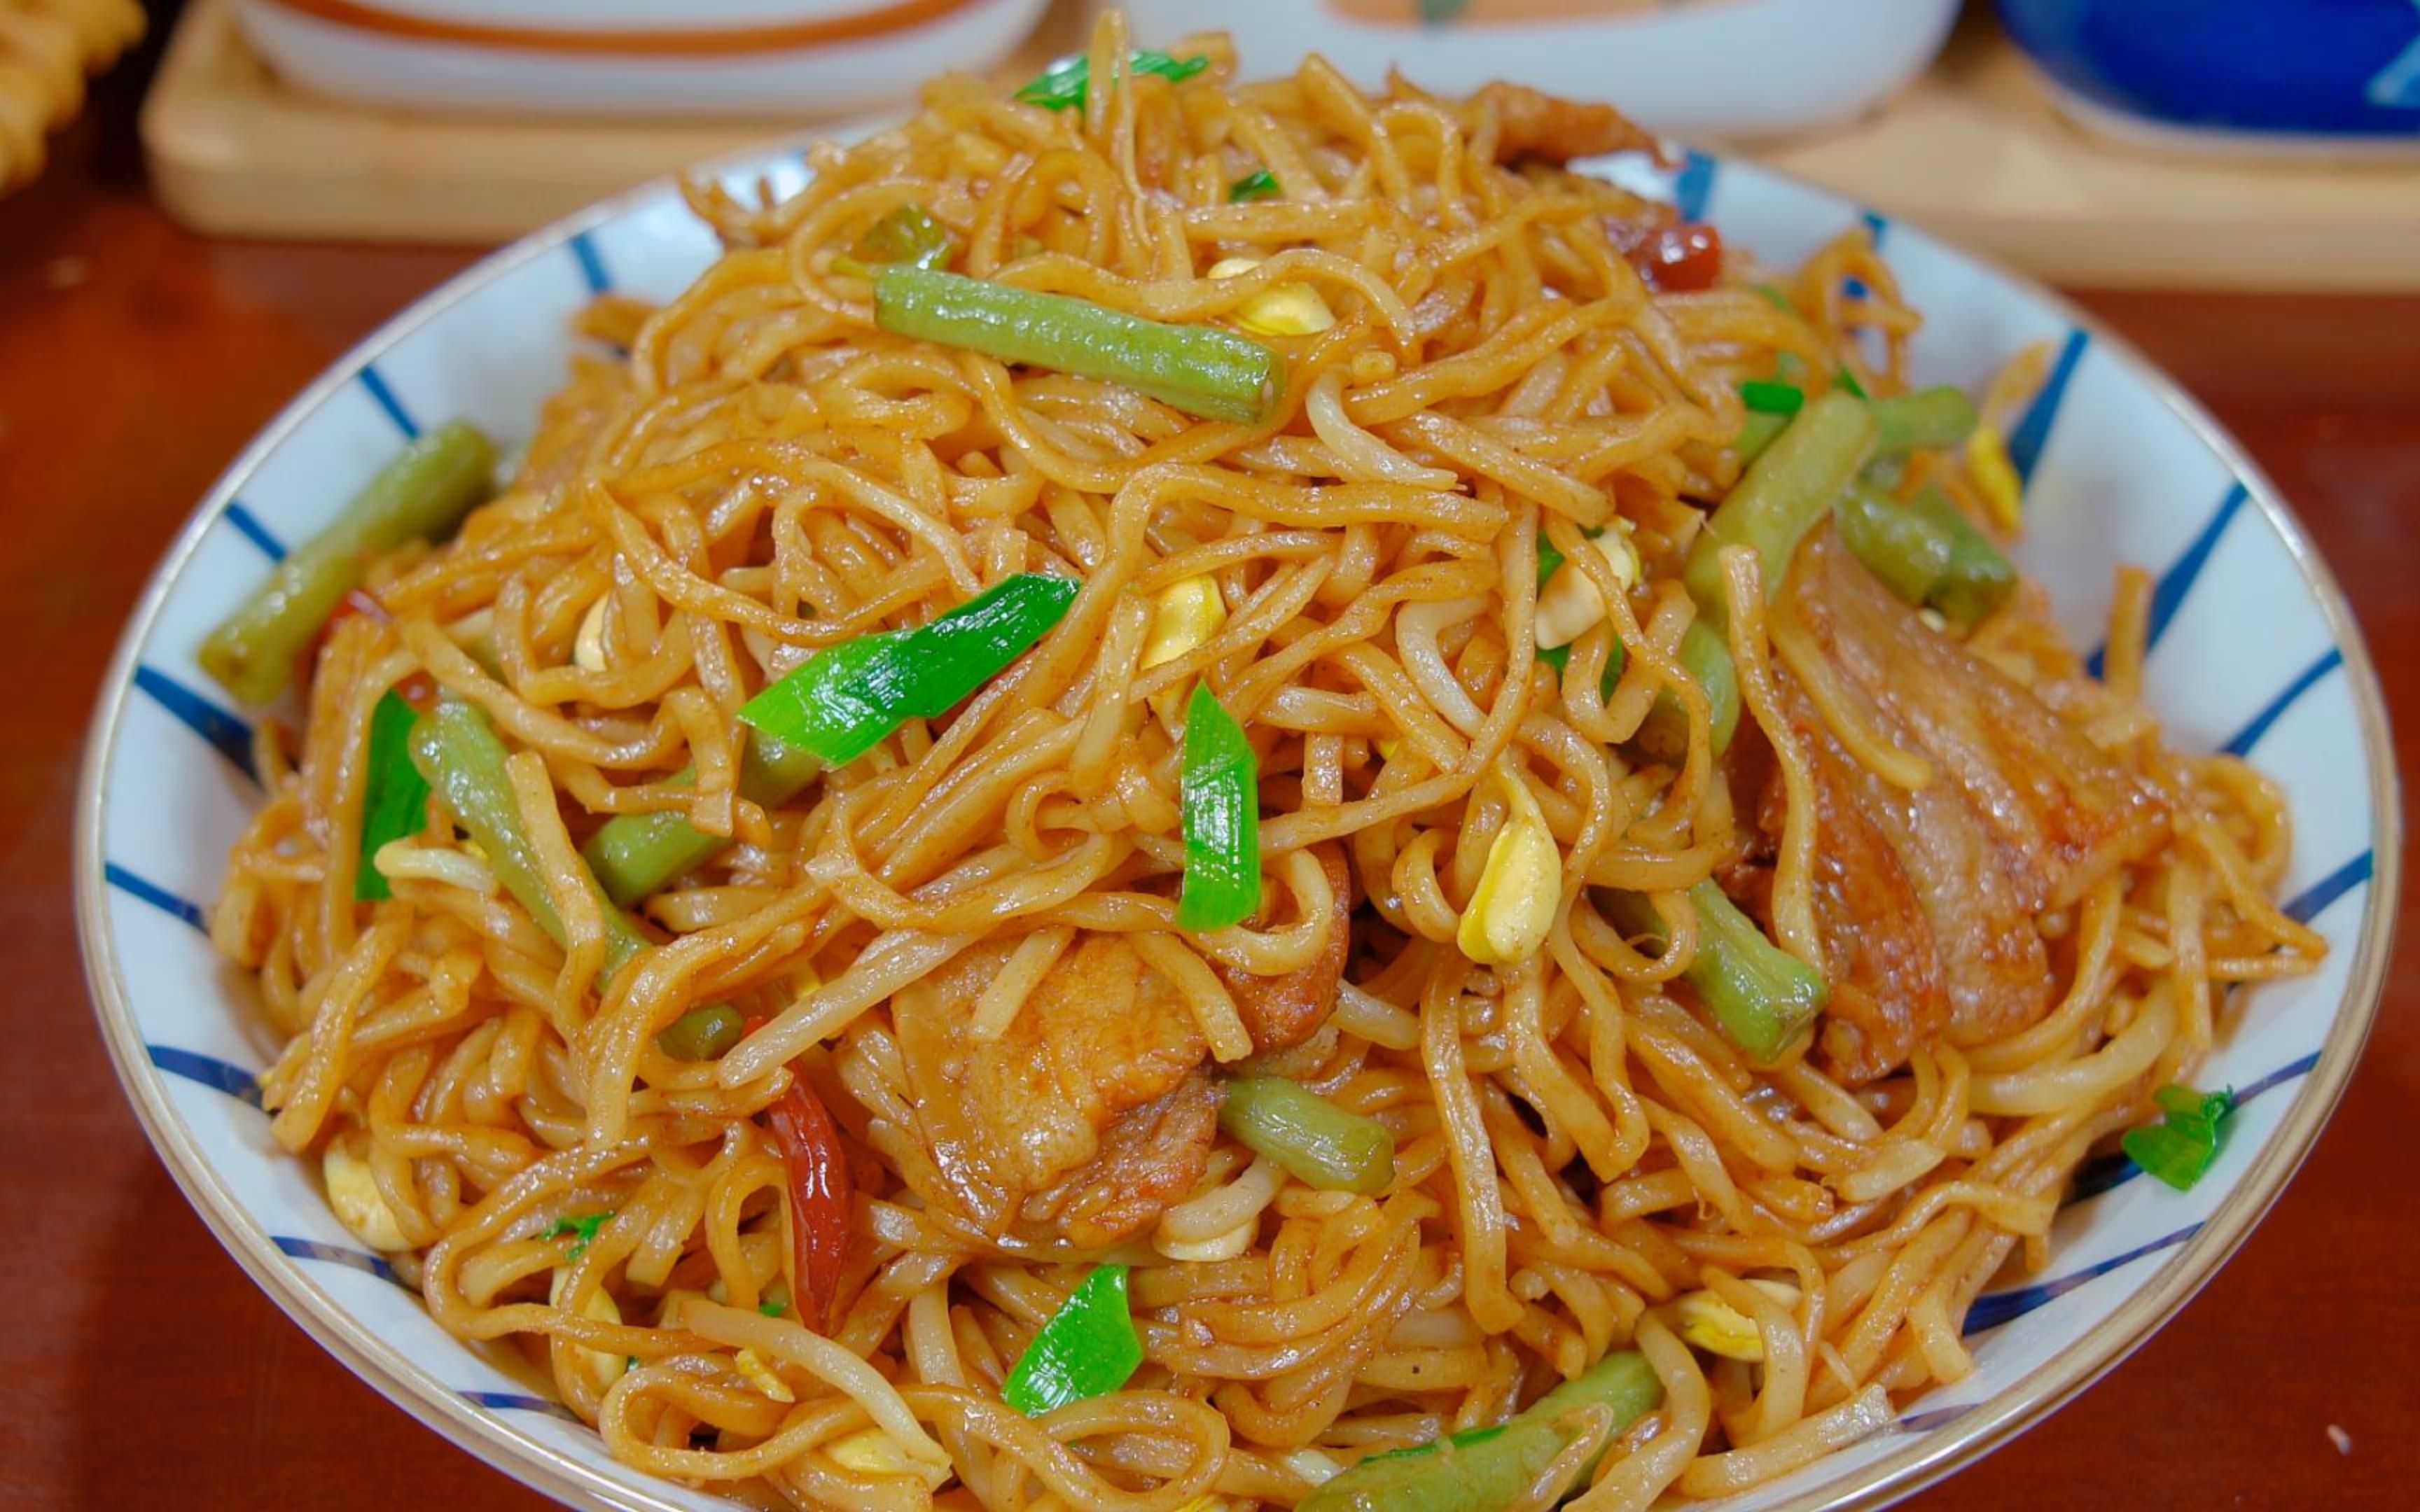 蒸面条是河南省和安徽省北部的汉族传统面食